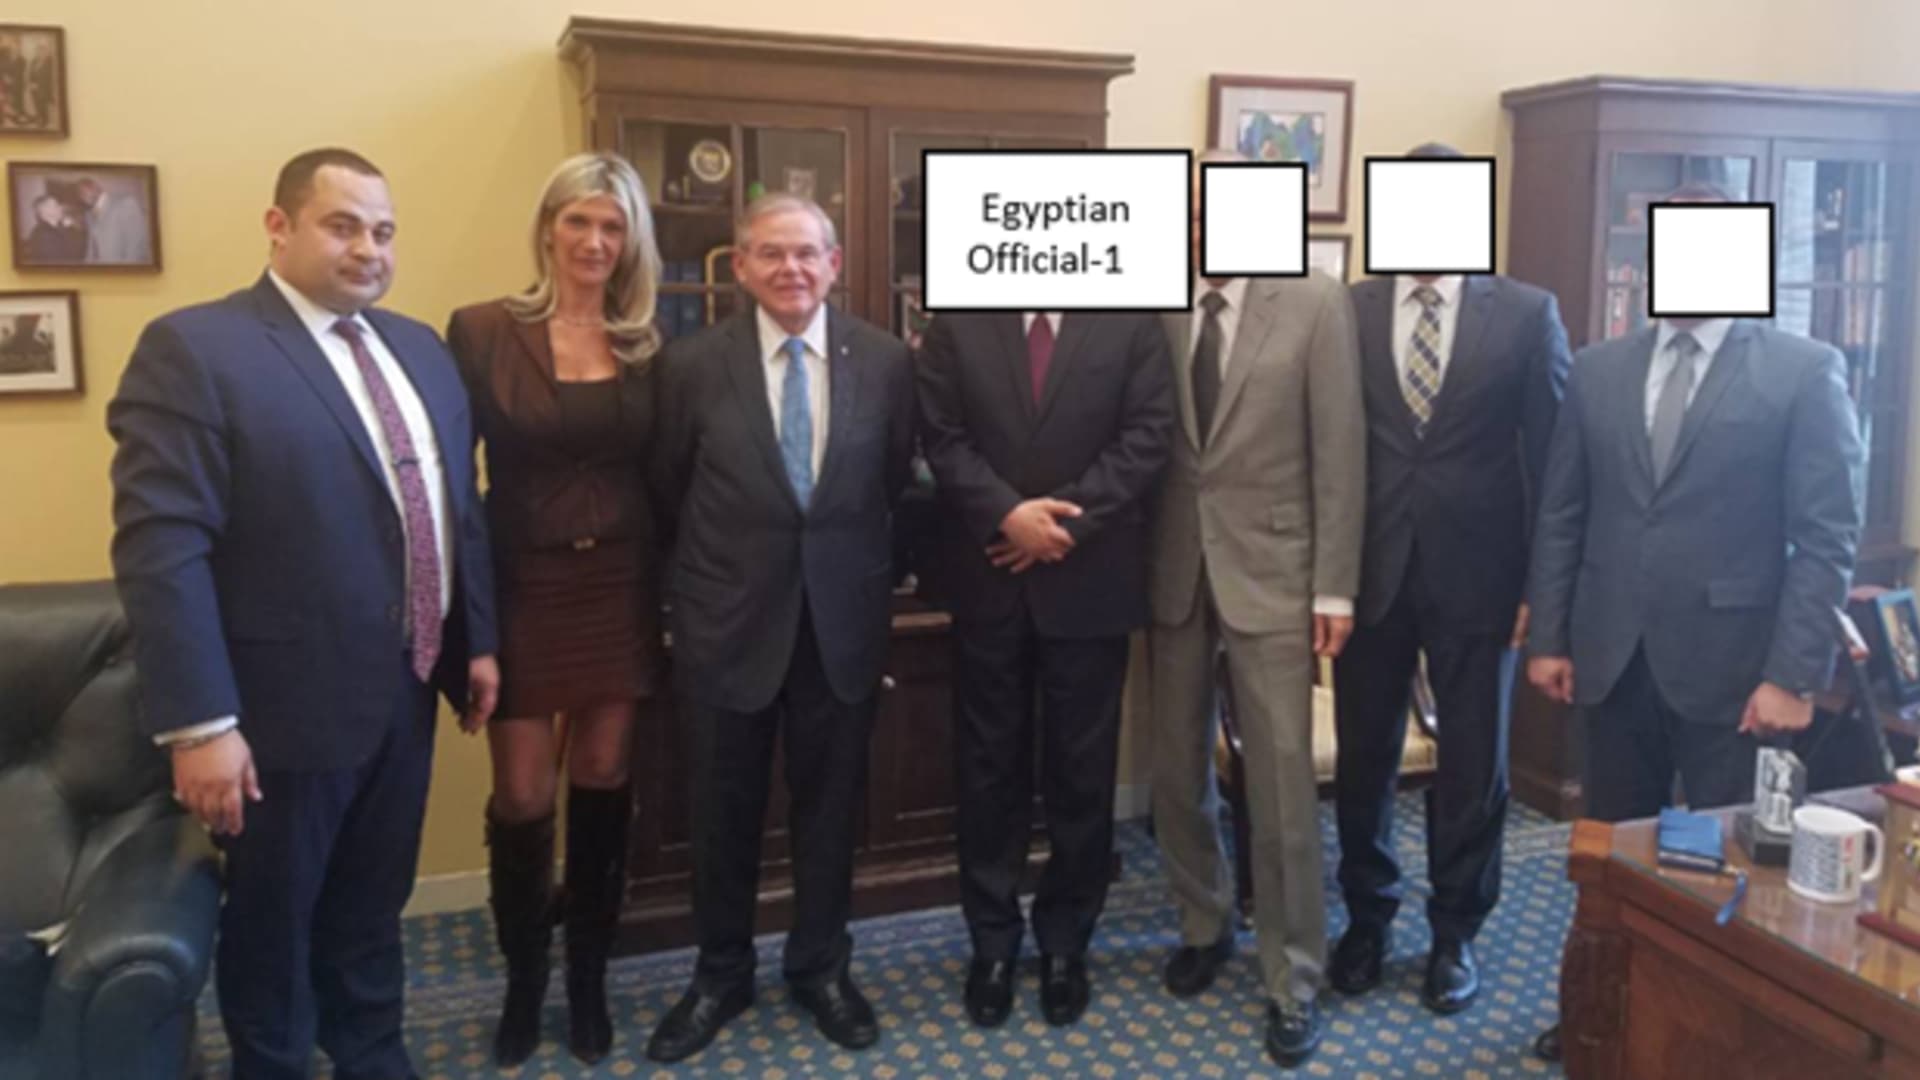 لقاء مزعوم في مكتب السيناتور مينينديز مع زوجته نادين؛  مسؤول عسكري مصري؛  ومسؤولين آخرين حيث ركزت المناقشة، من بين أمور أخرى، على التمويل العسكري الأجنبي في مصر، وفقًا للائحة الاتهام.